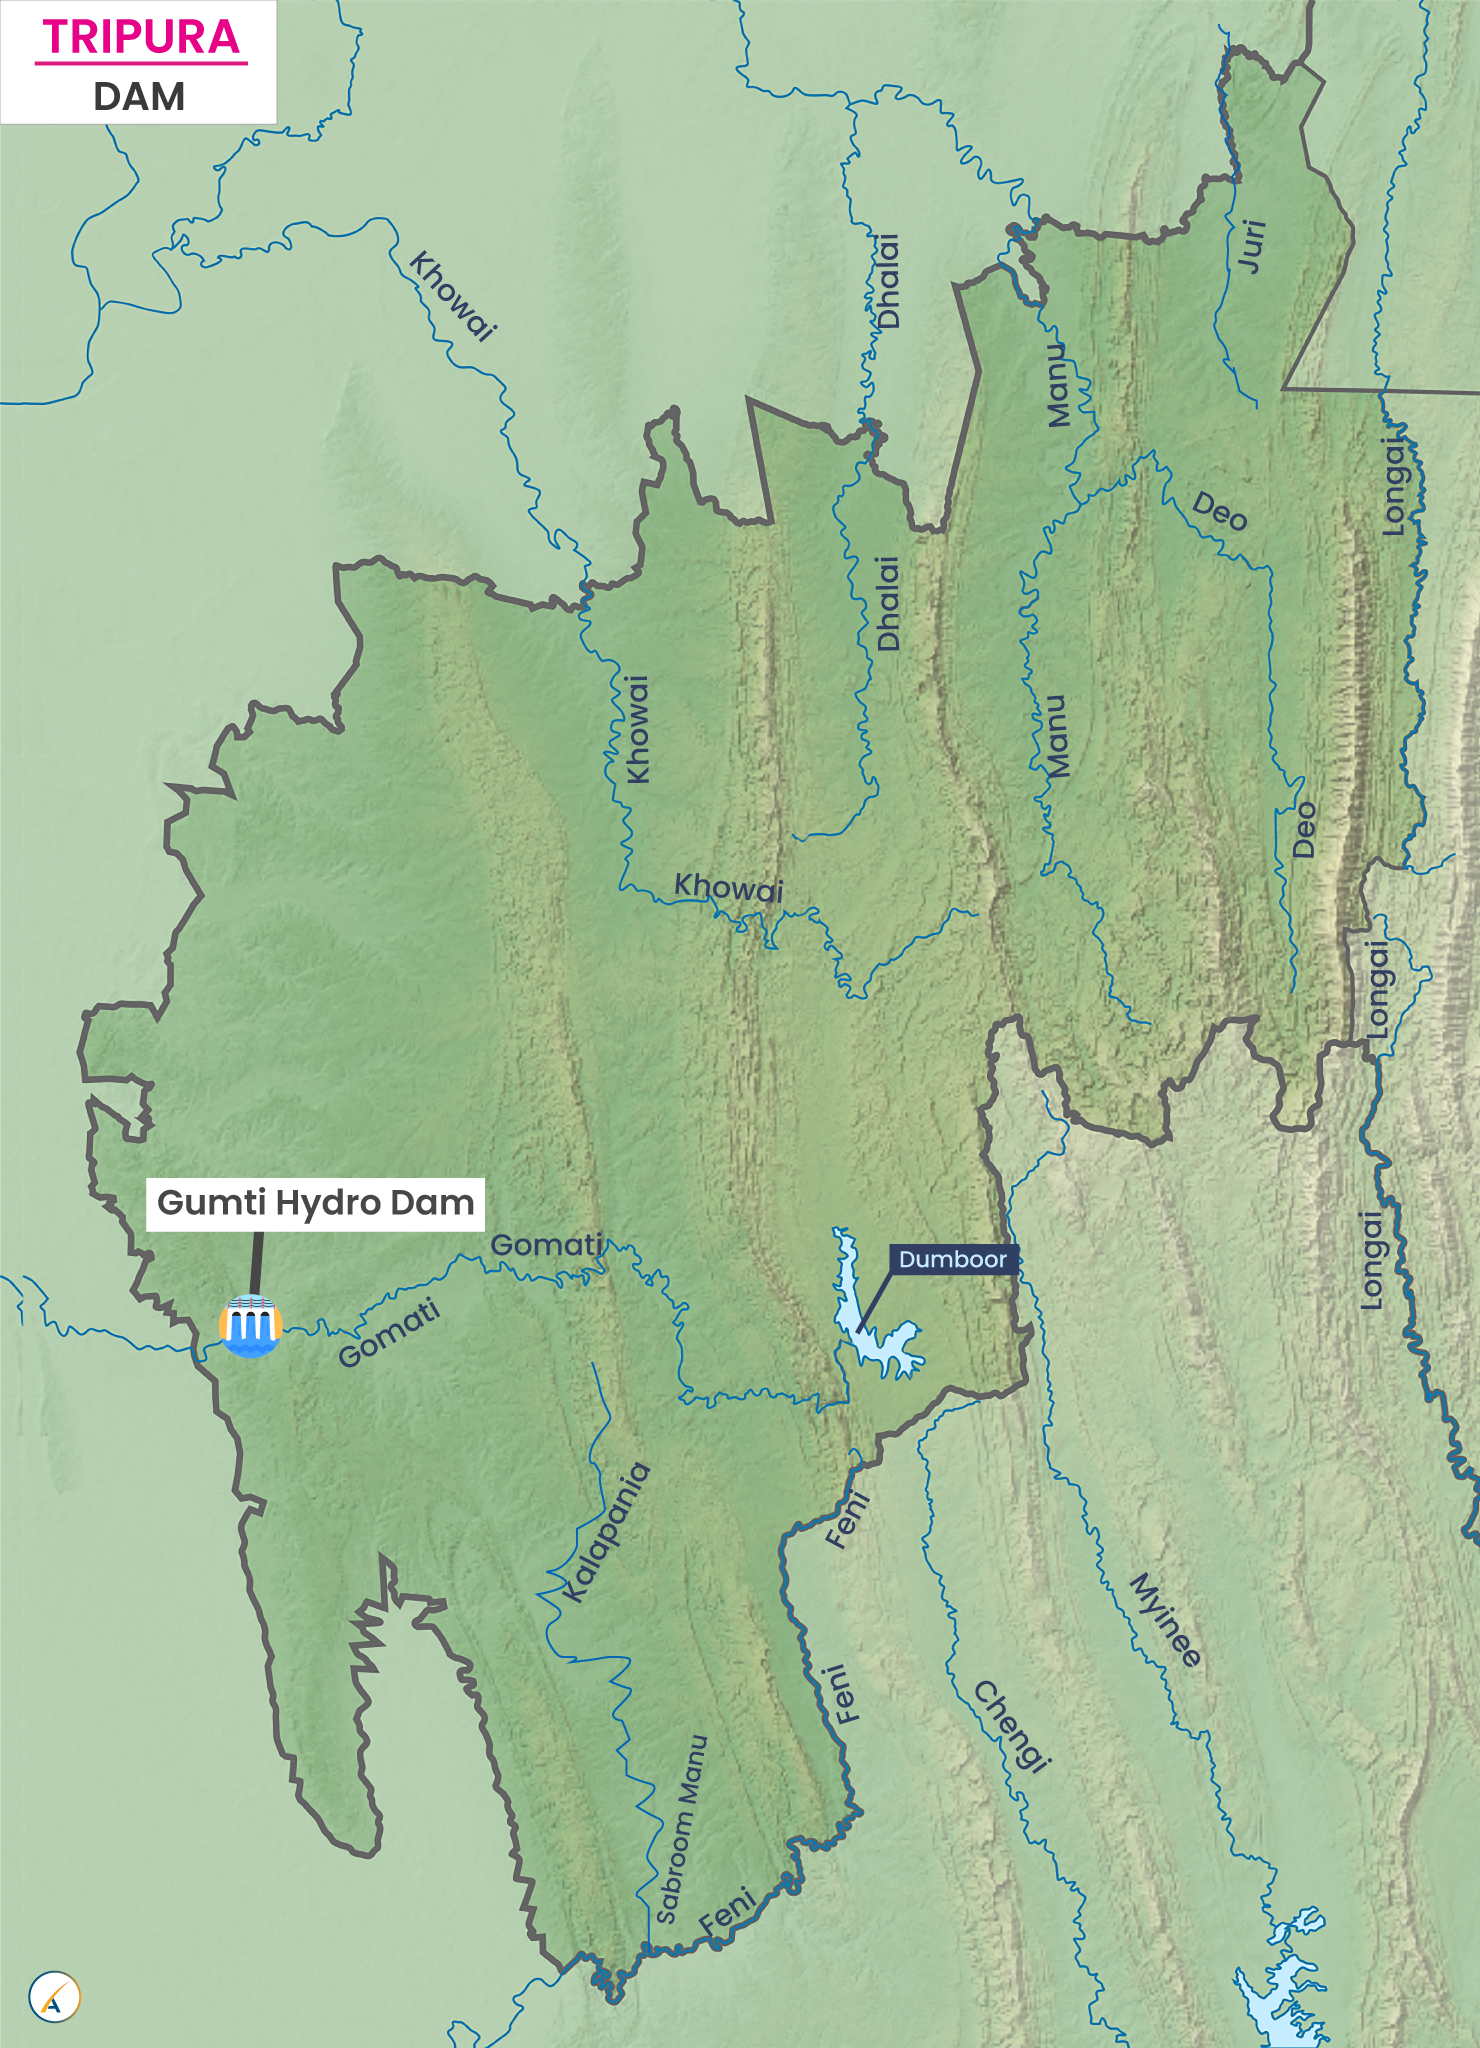 Major Dams in Tripura (Map)